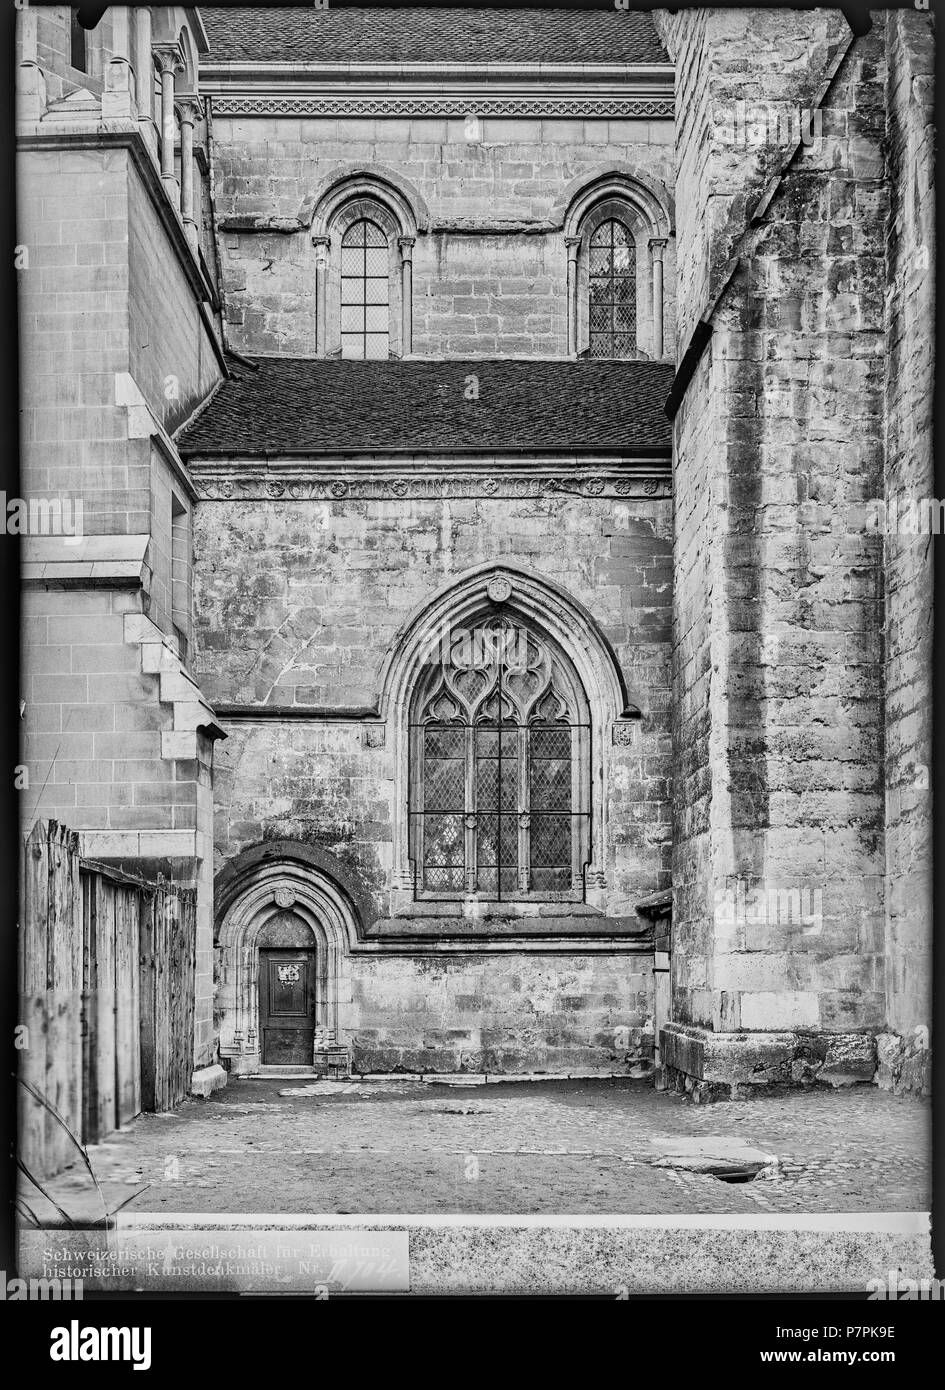 74 CH-NB - Lausanne, Cathédrale protestante Notre-Dame, vue partielle extérieure - Collection Max van Berchem - EAD-7291 Stock Photo